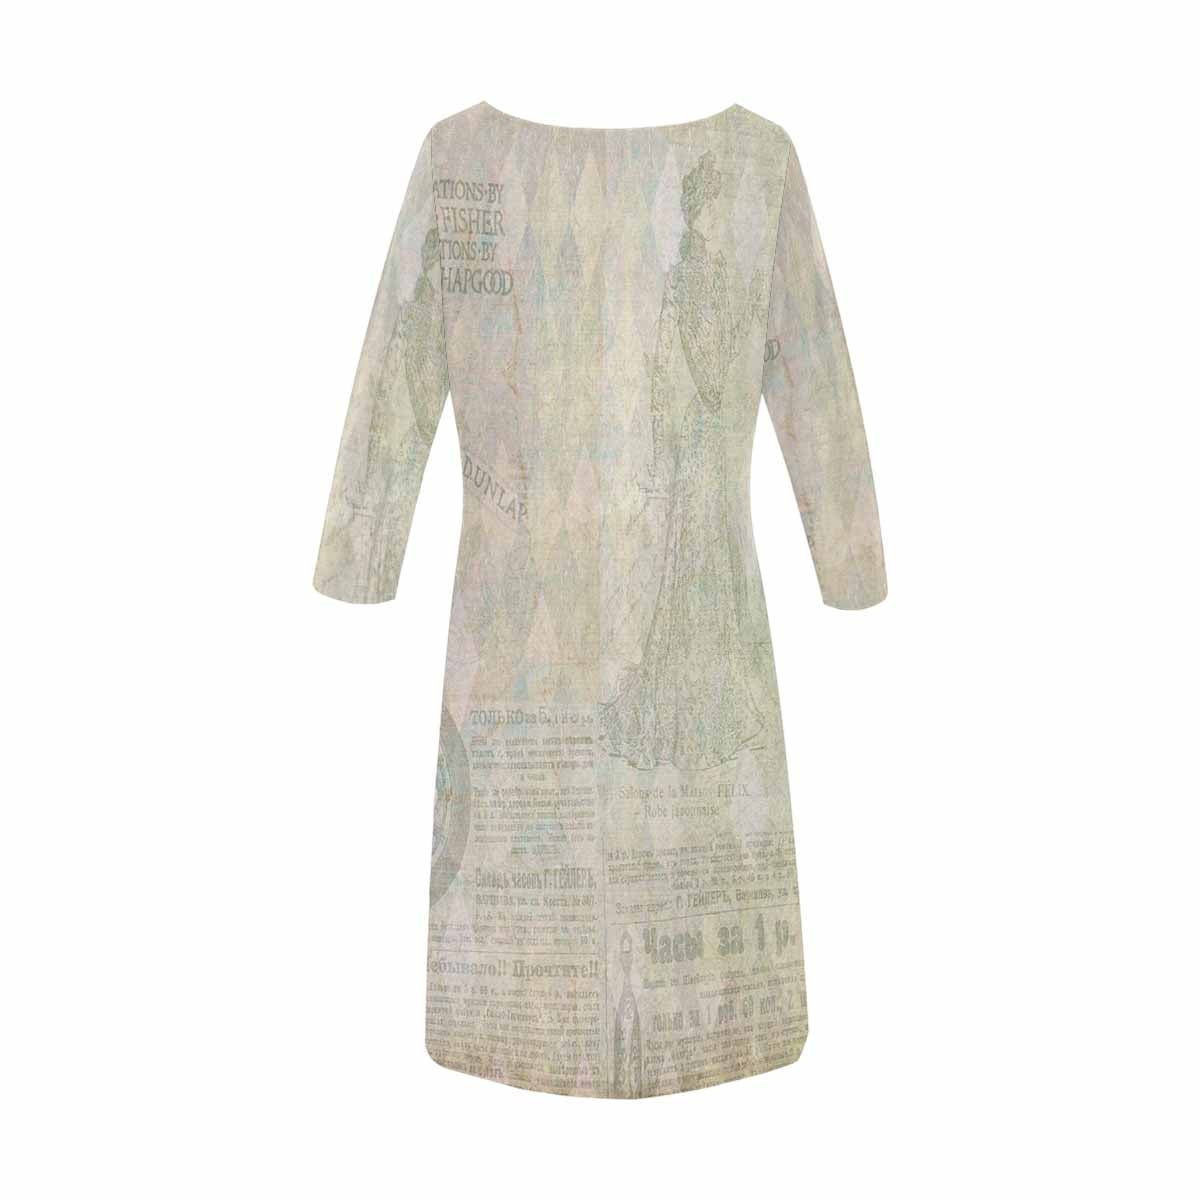 Antique General loose dress, MODEL 29532, design 27